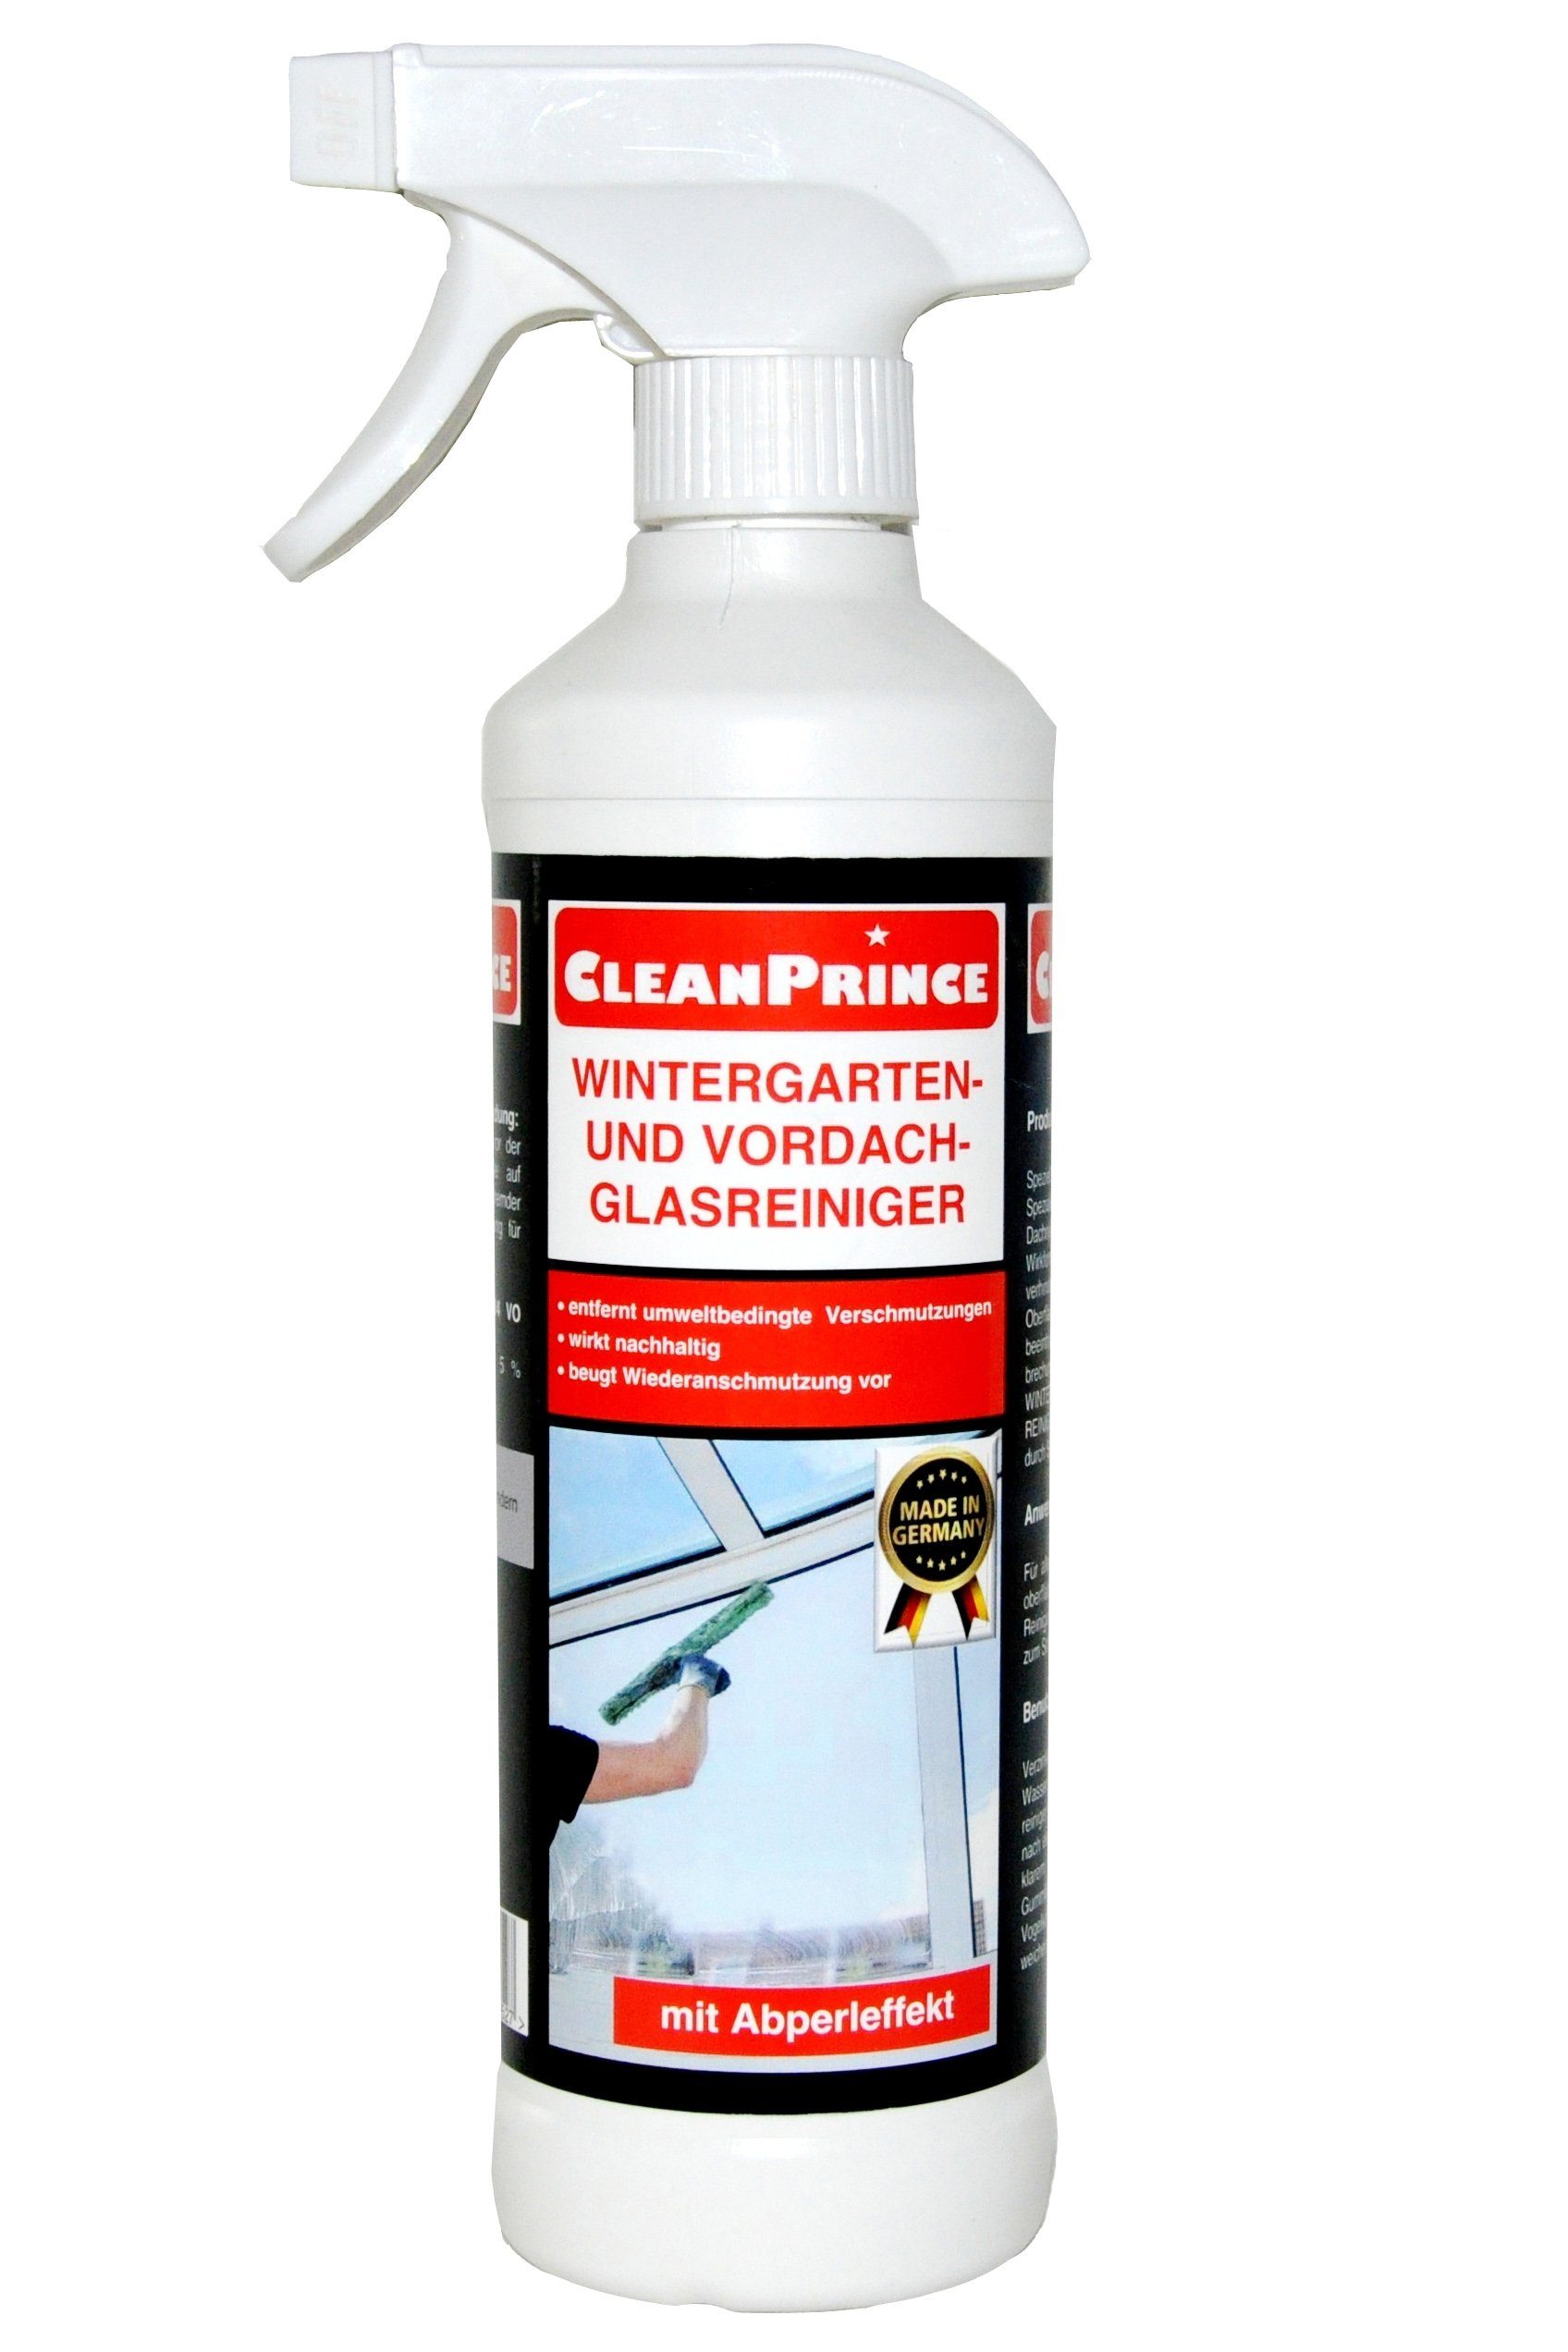 CleanPrince Wintergarten und Vordach Glasreiniger Glasreiniger (gebrauchsfertiger Spezialreiniger)